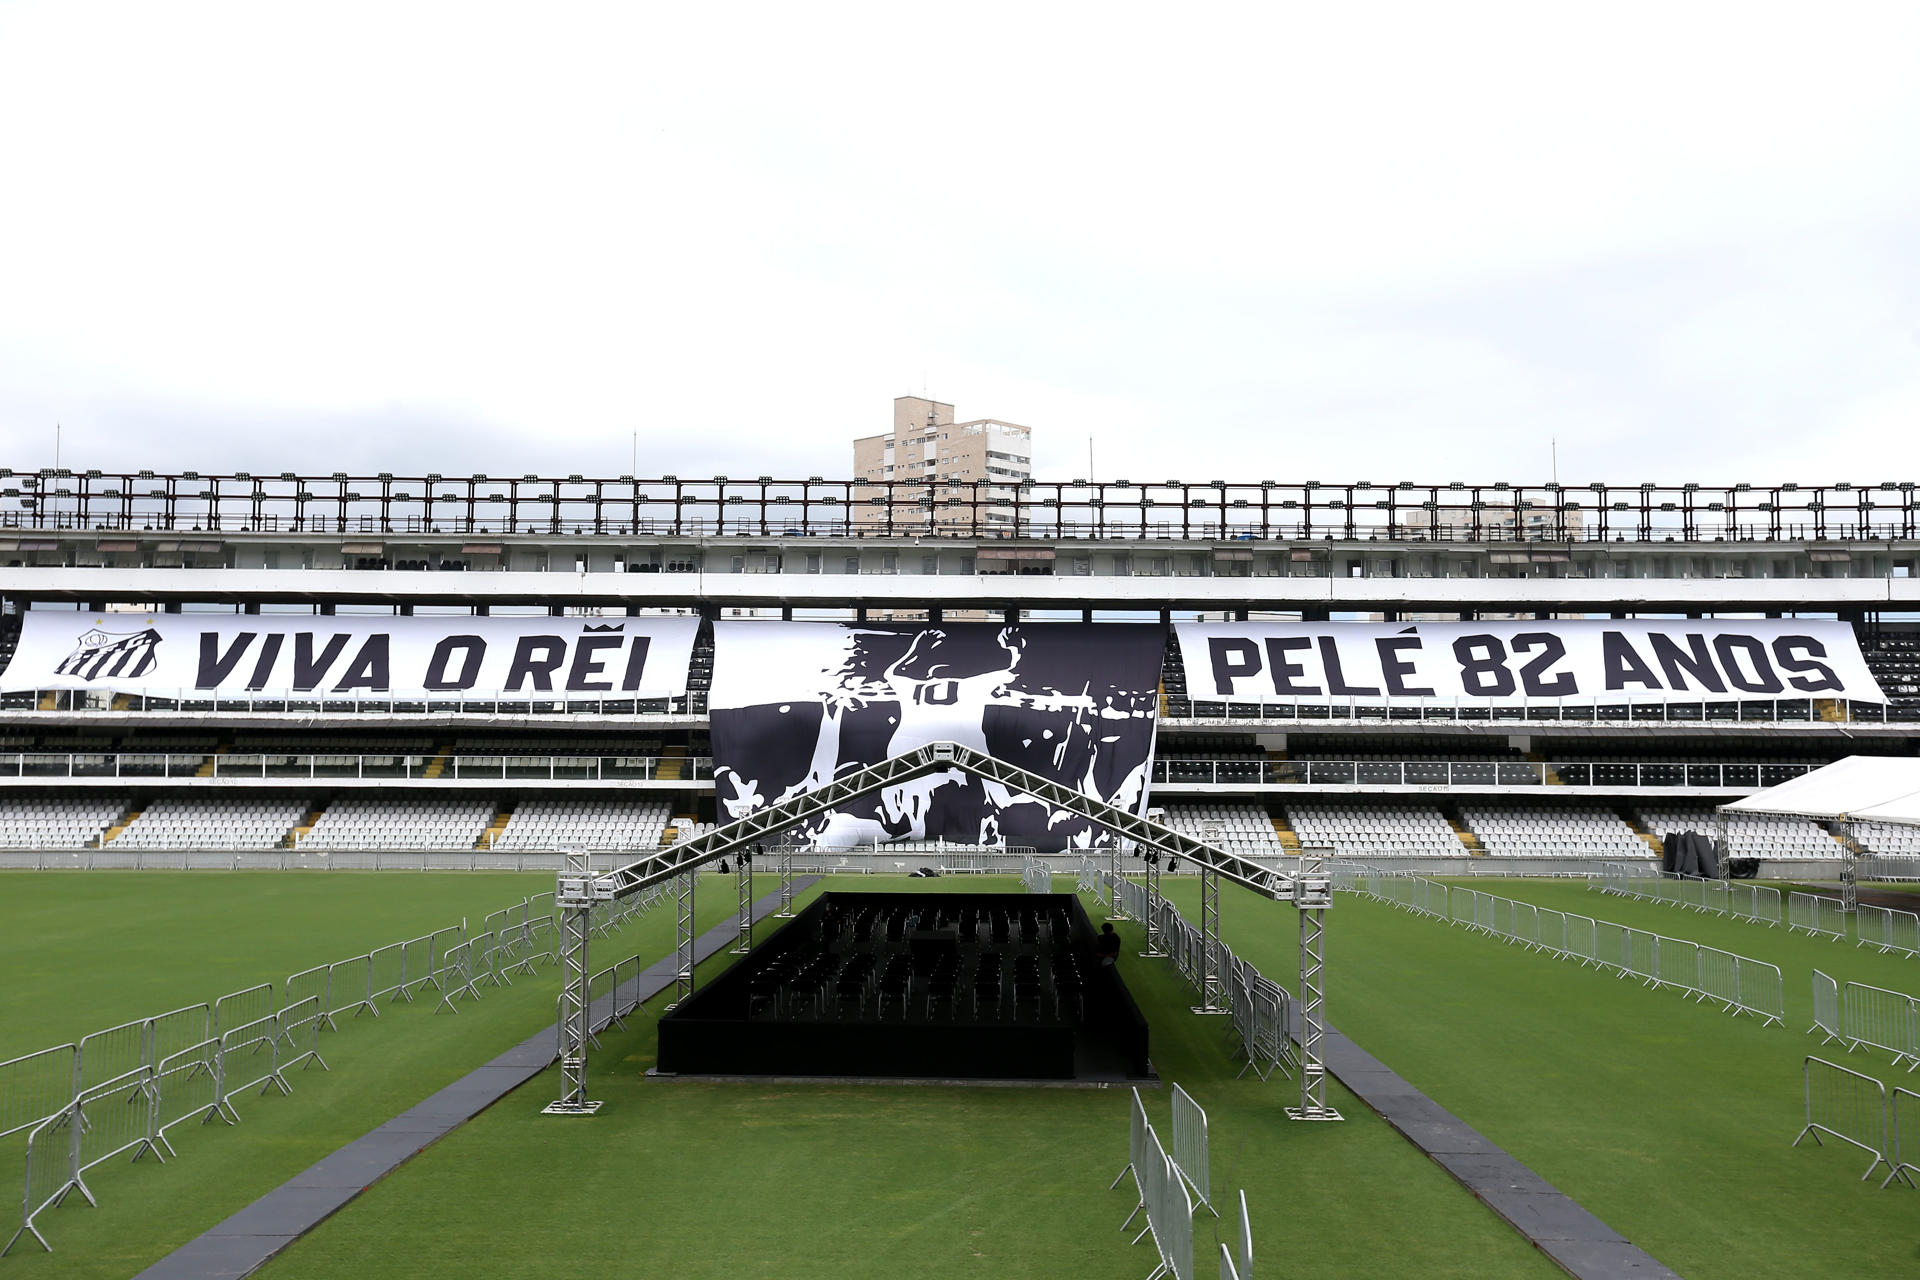 El Santos avanza en los preparativos del velatorio de Pelé